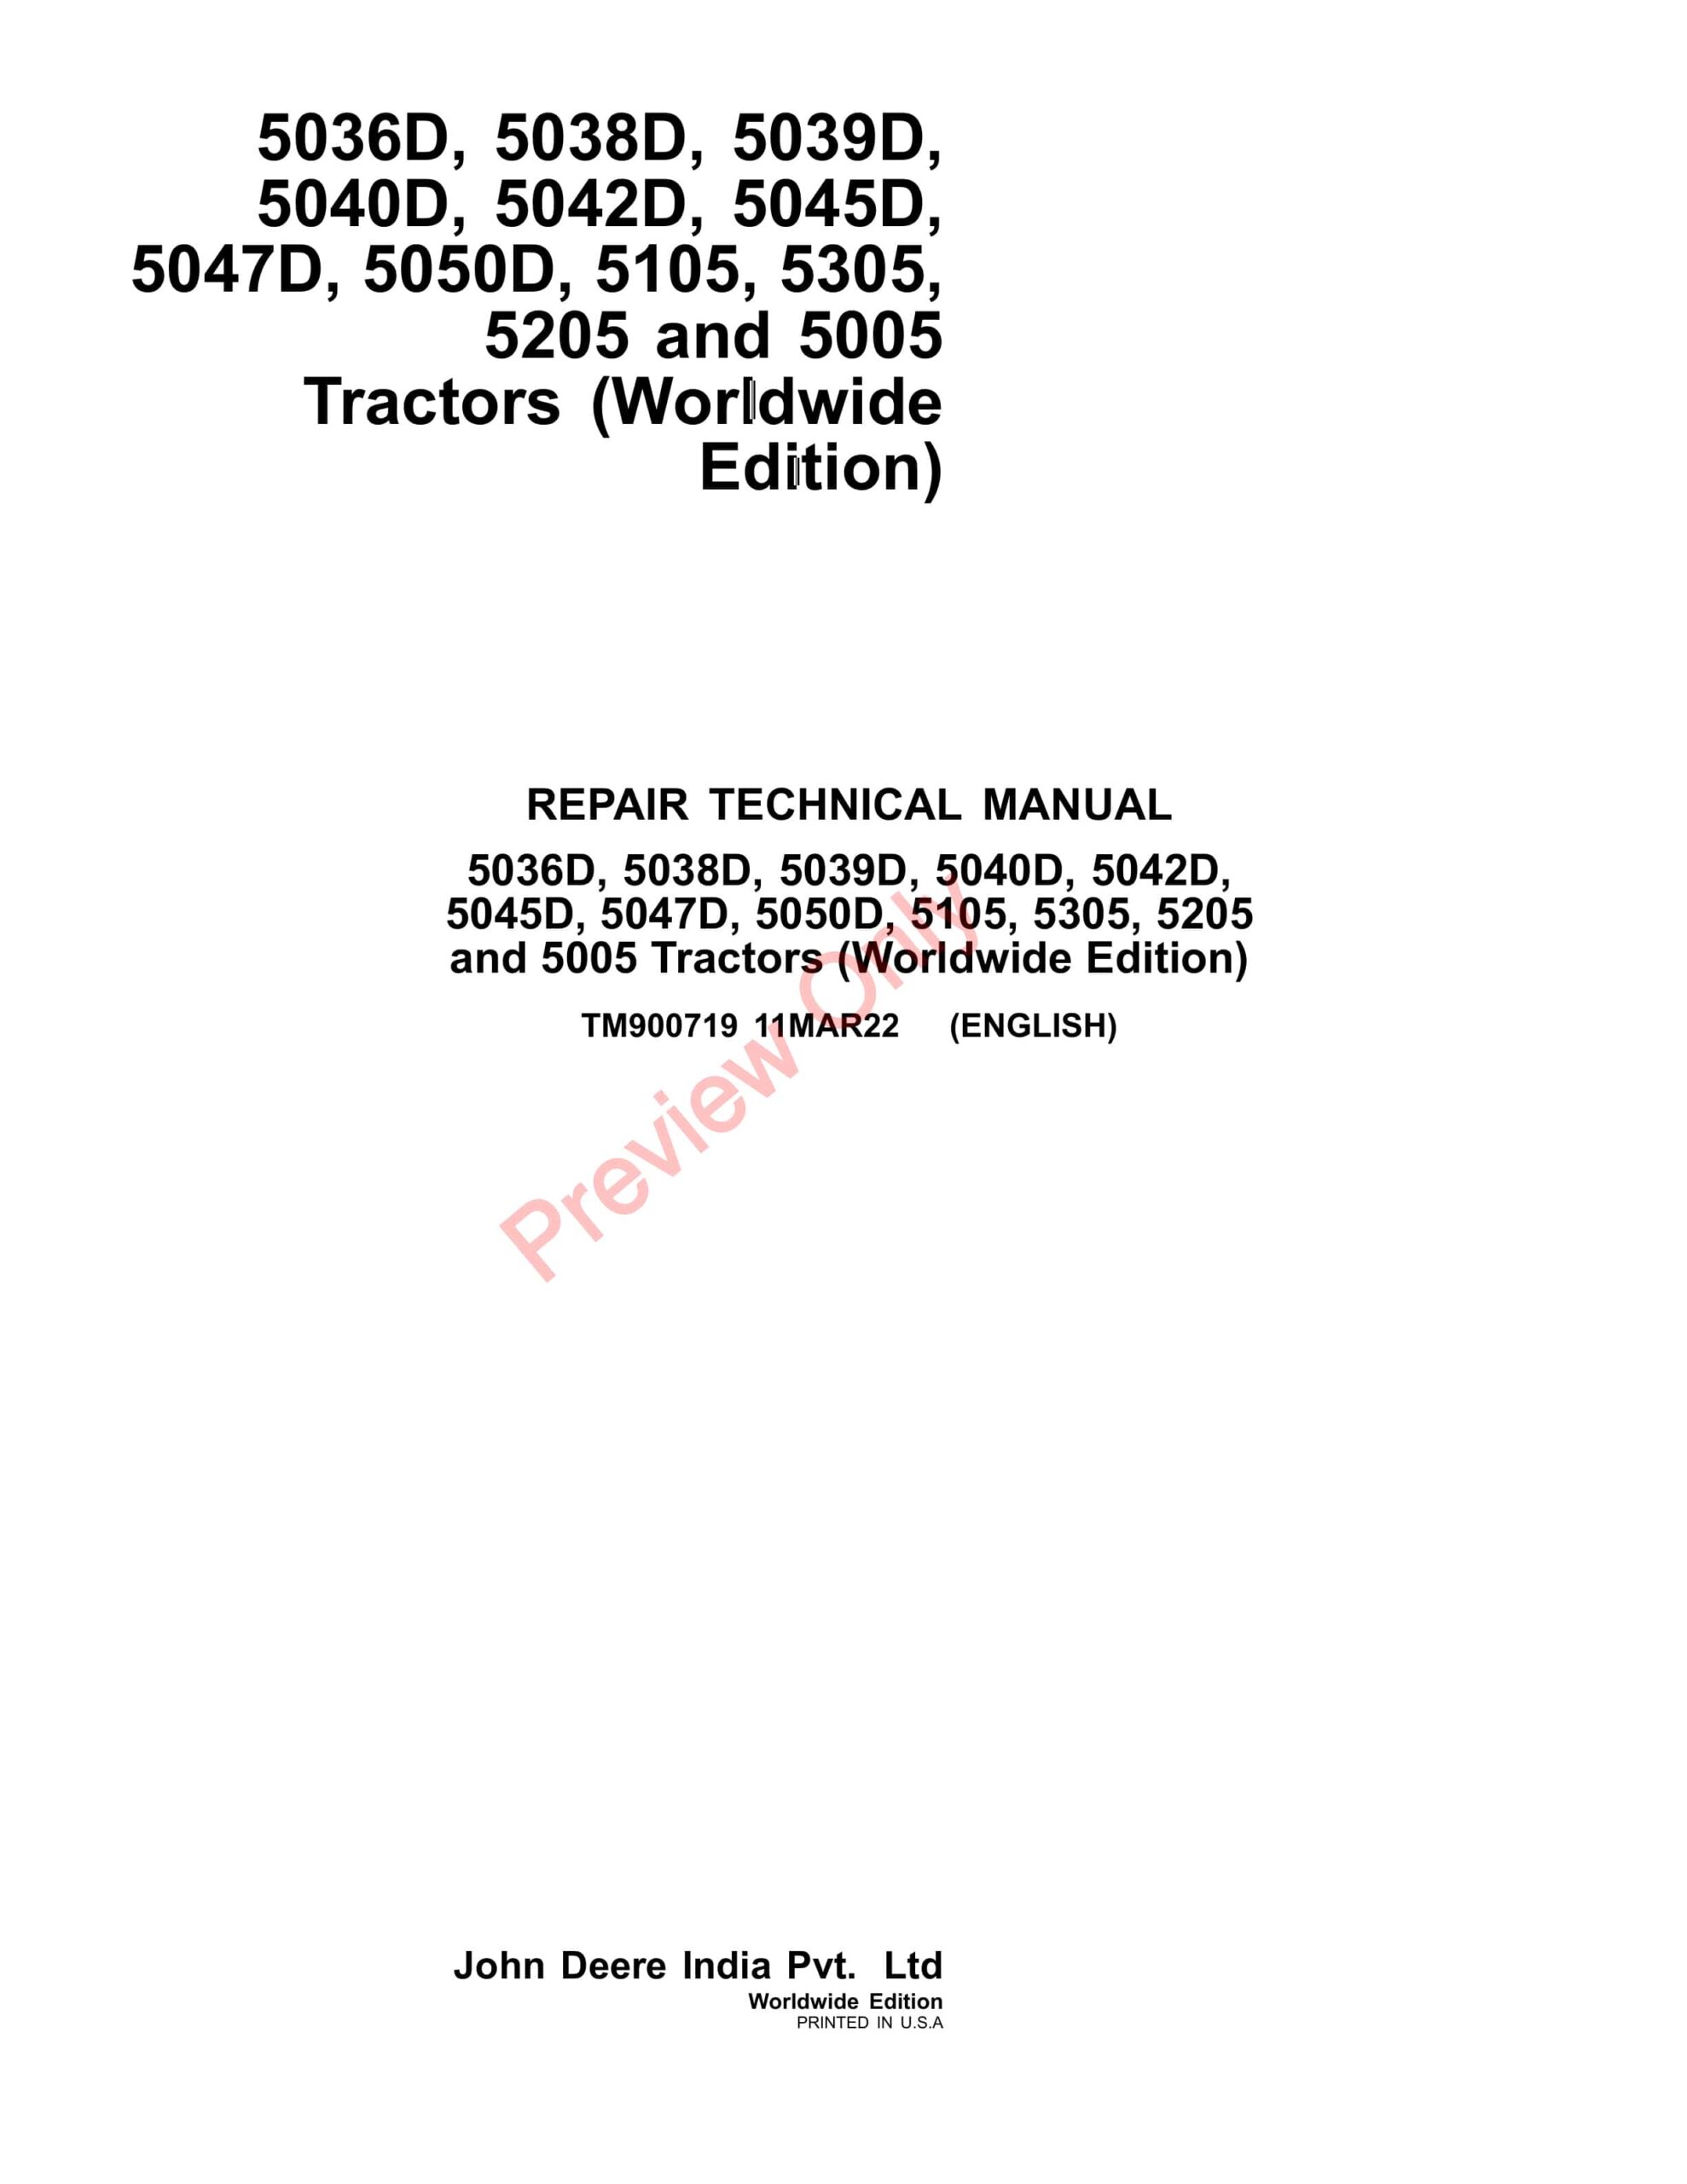 John Deere 5036D, 5038D, 5039D, 5042D, 5045D, 5047D, 5050D, 5105, 5305, 5205 and 5005 Tractors Repair Technical Manual TM900719 11MAR22-1